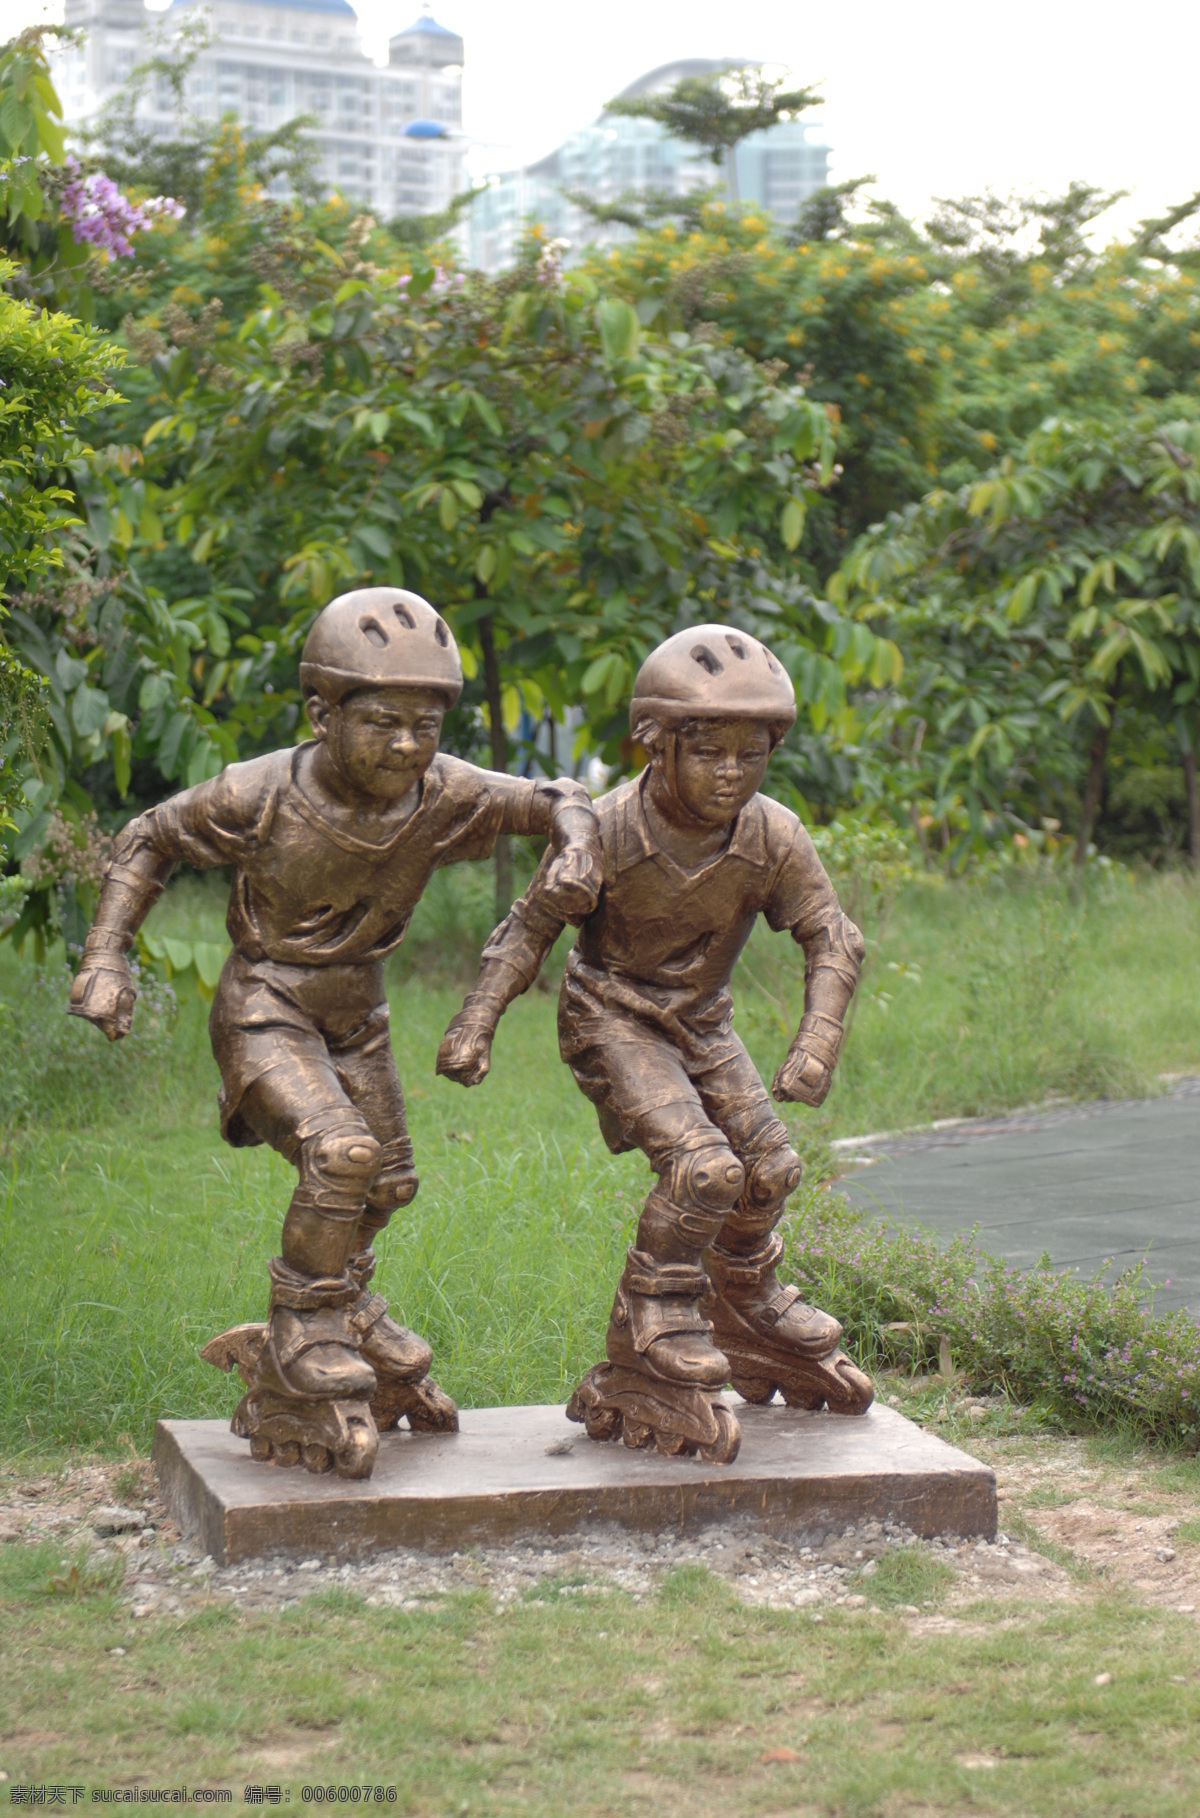 溜冰的小孩 风光摄影图片 摄影素材 雕塑 雕刻 体育运动雕塑 雕塑图片 雕塑素材 雕塑图片专辑 建筑园林